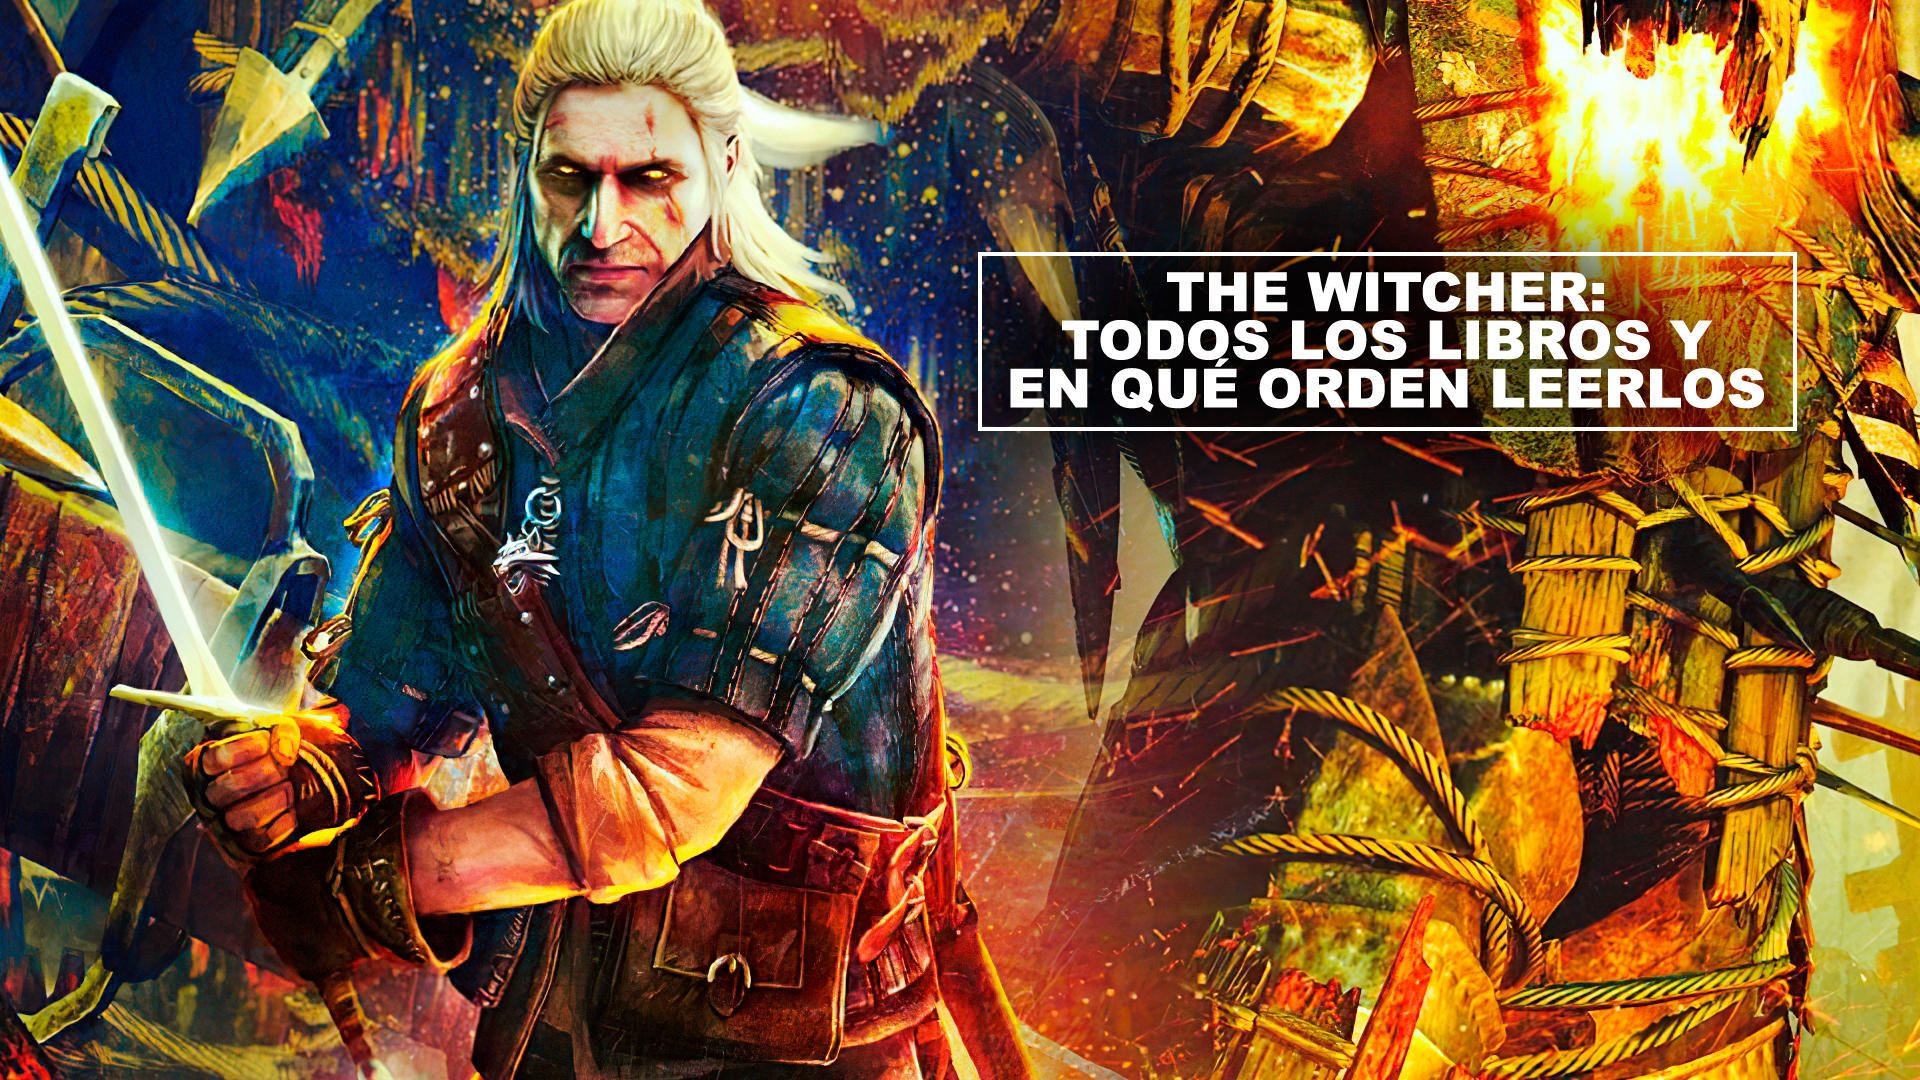 THE WITCHER - Libros de la saga del brujo Geralt de Rivia